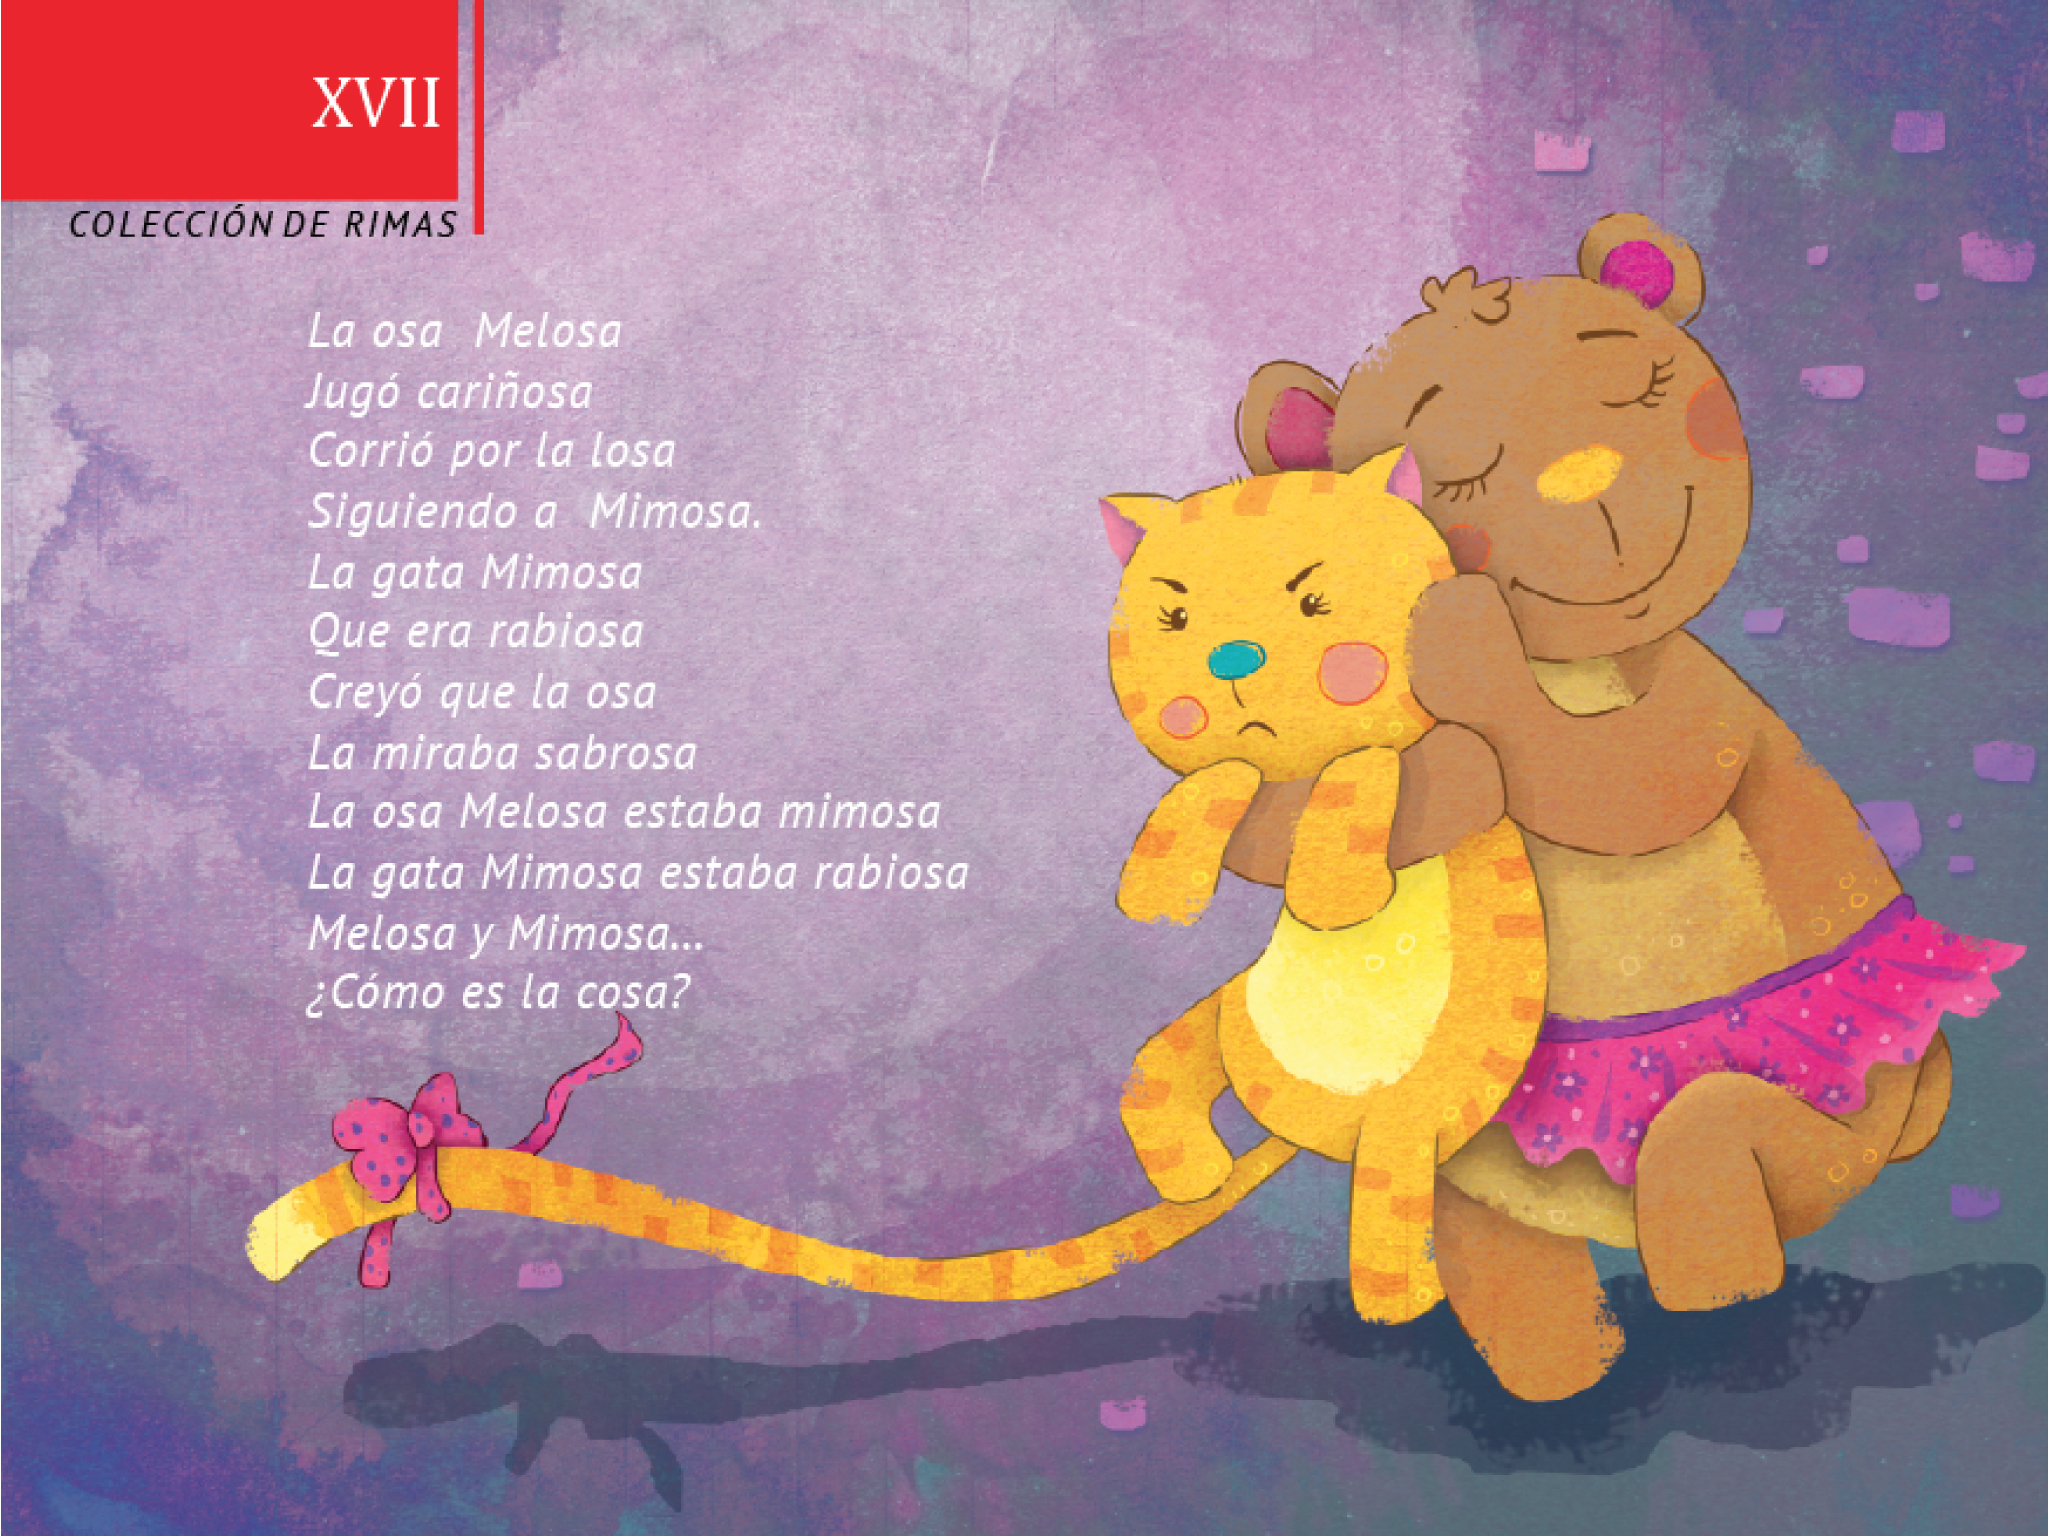 Imagen de la portada del libro de colección de rimas,donde aparece un poema y una osa abrazando a un gatito. 